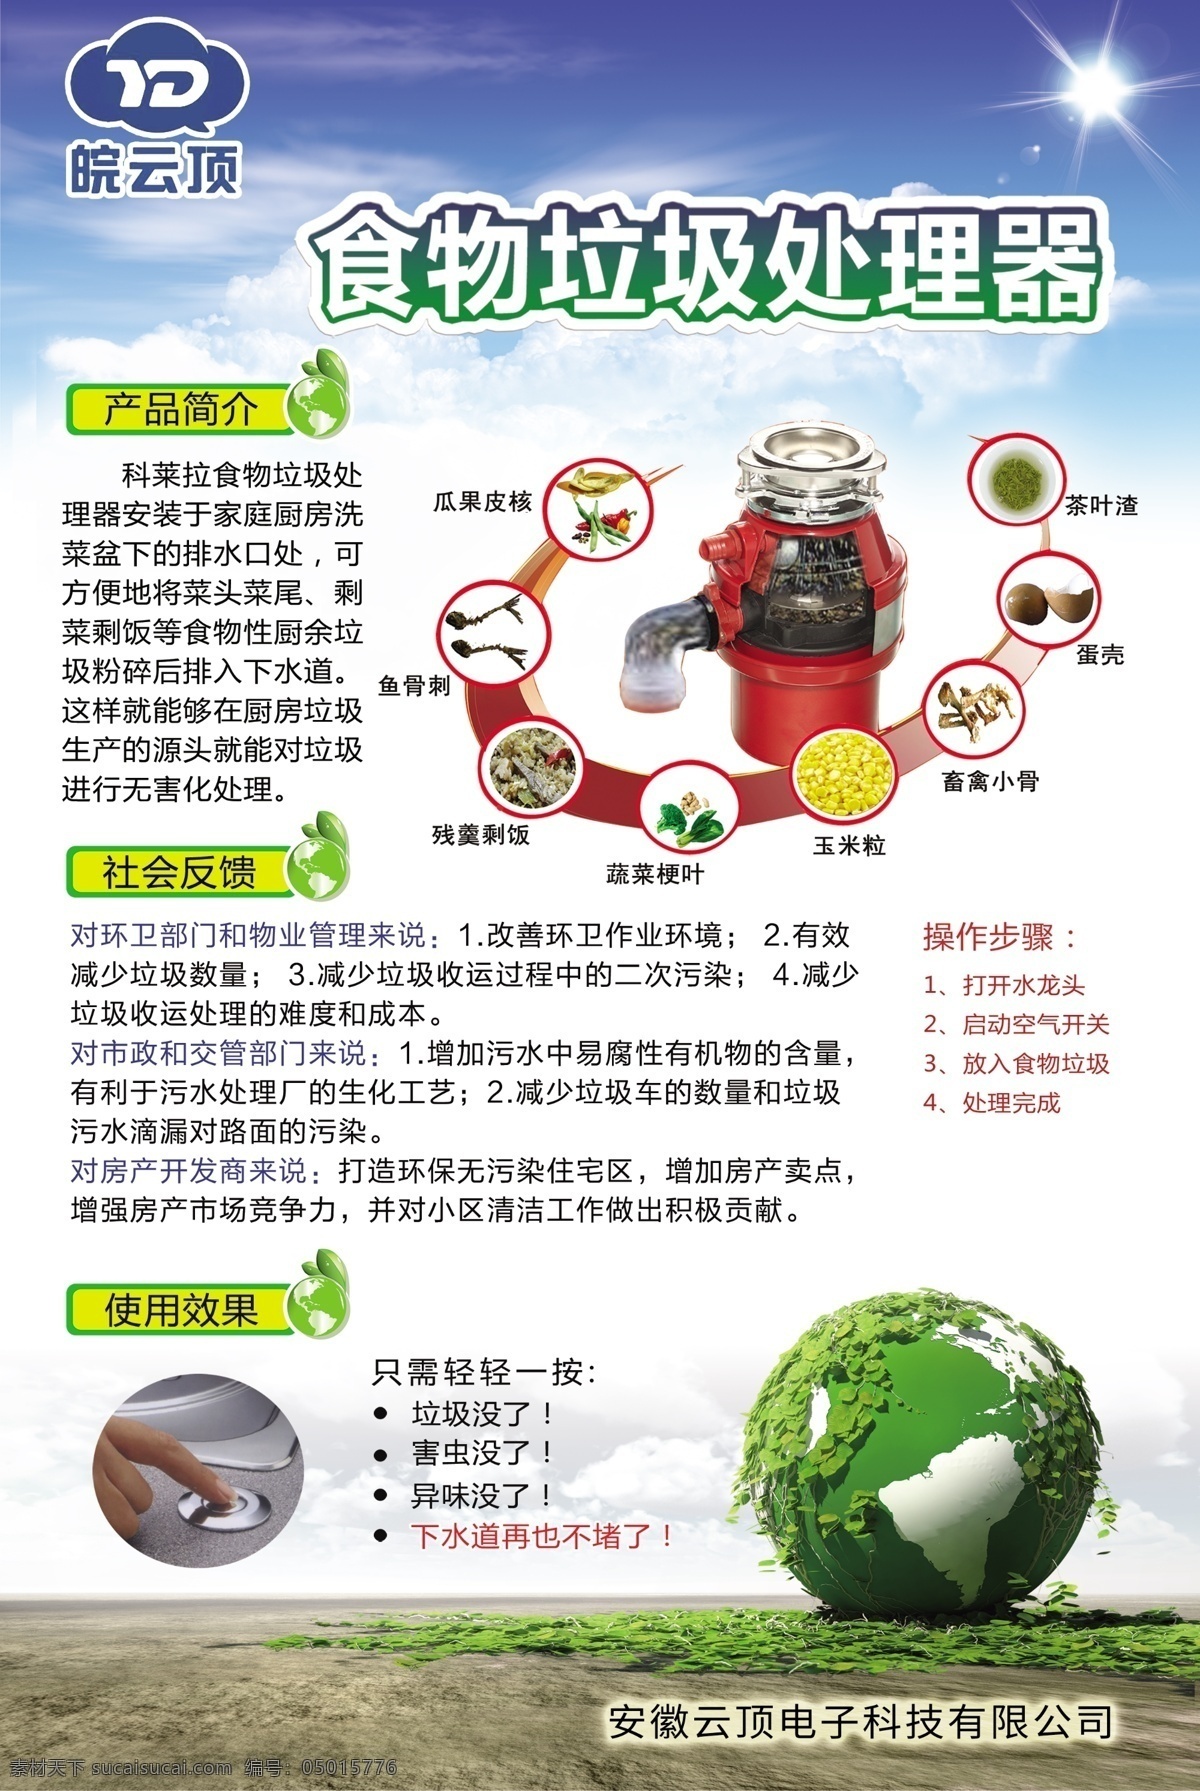 食物 垃圾 处理器 食物处理器 净化器 垃圾处理器 清新海报 垃圾分类